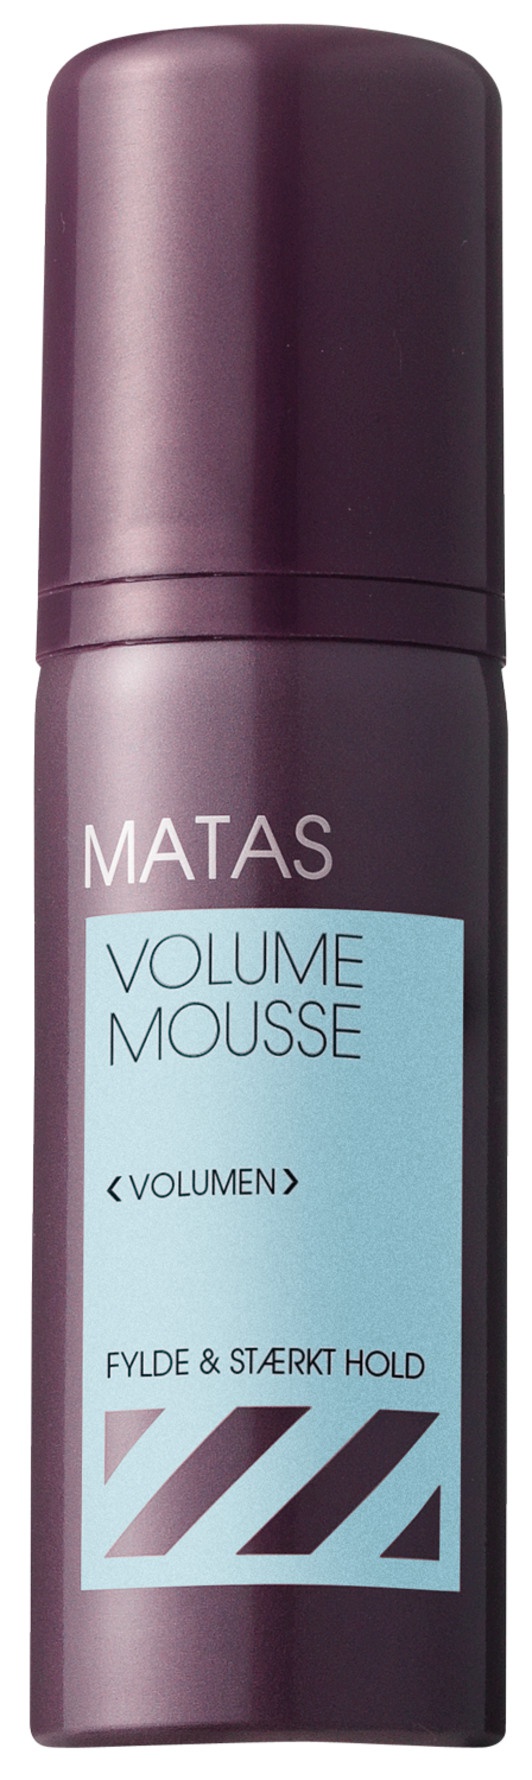 Matas Volume Mousse